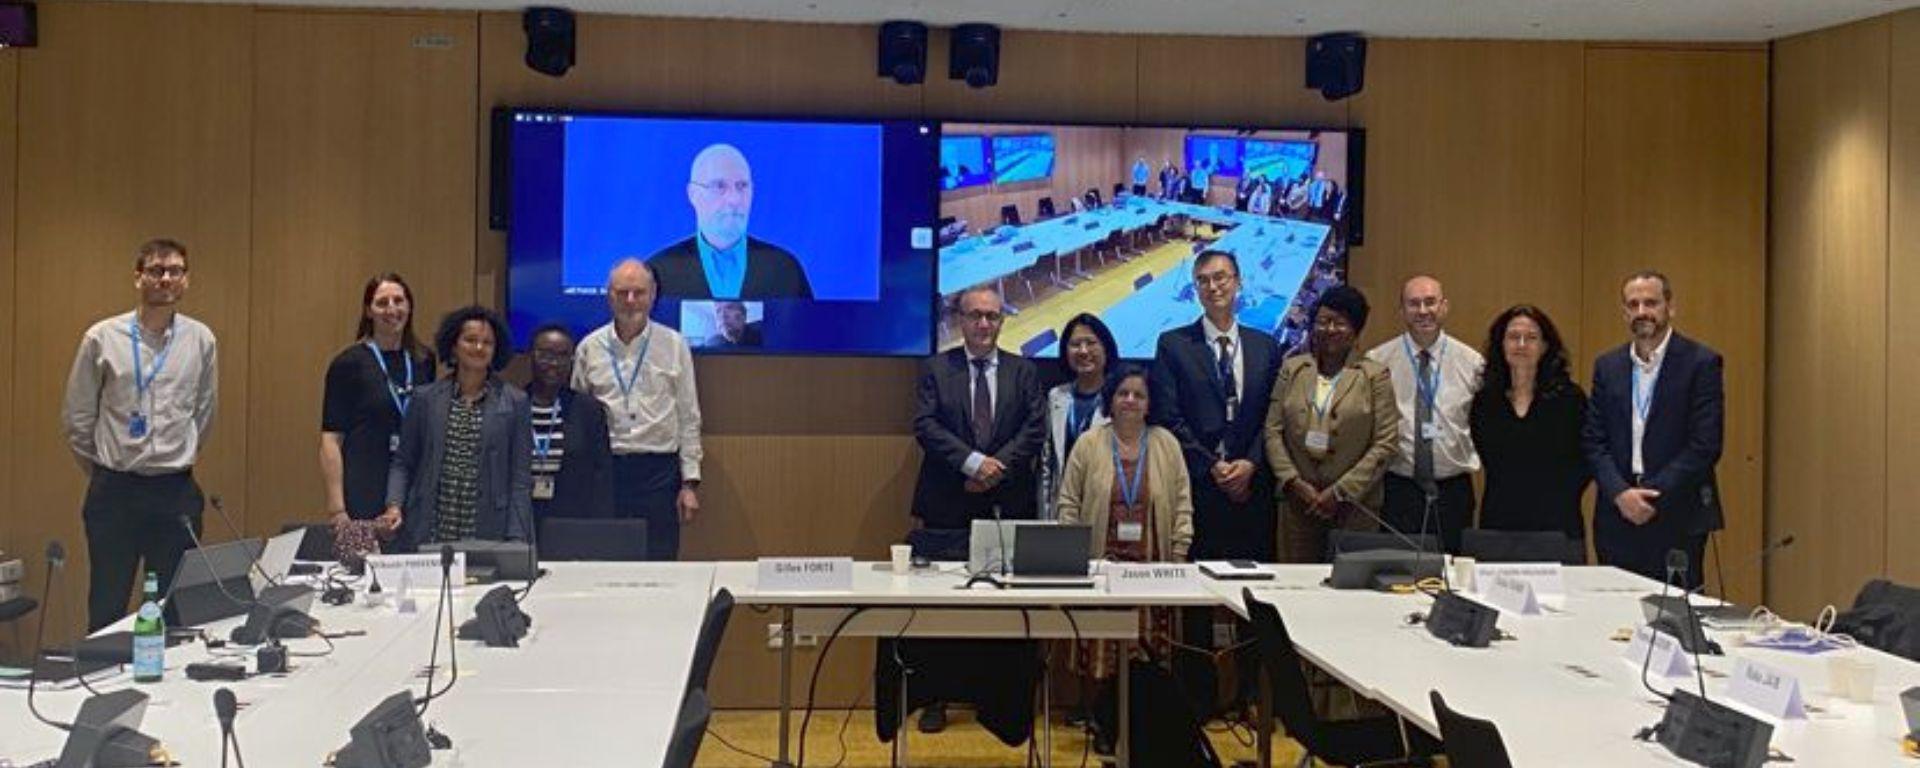 Antonio Pascale posa junto a comité de expertos en Farmacodependencia de la OMS, en mesa en "u", con pantallas digitales de fondo